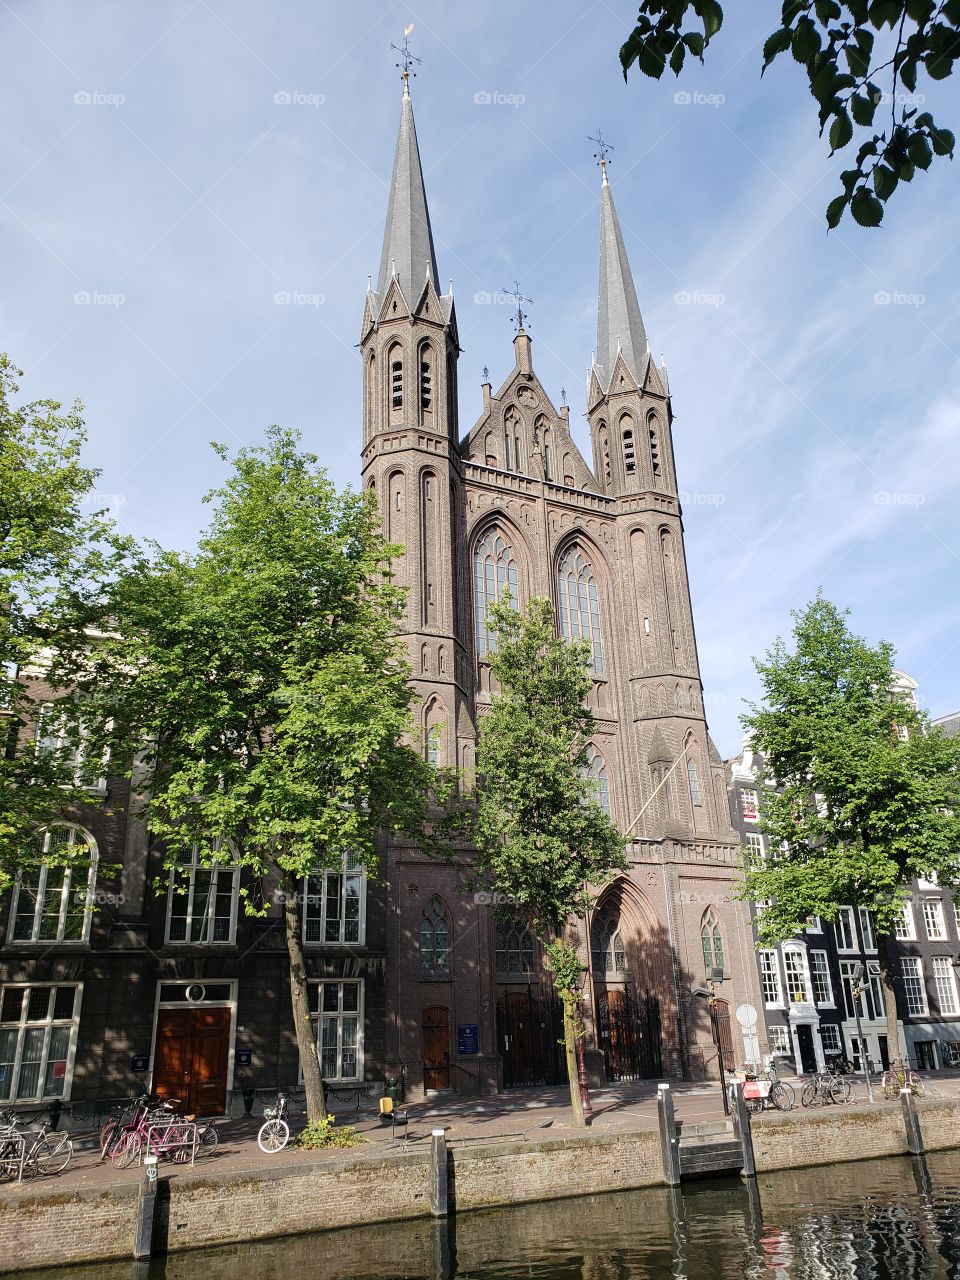 religión, naturaleza, arquitectura y estilo de vida en Amsterdam